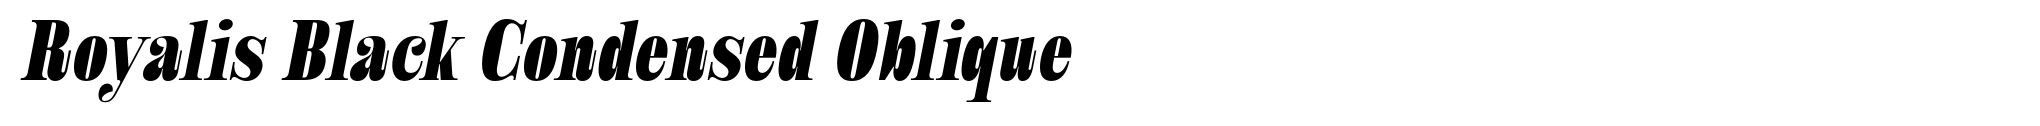 Royalis Black Condensed Oblique image